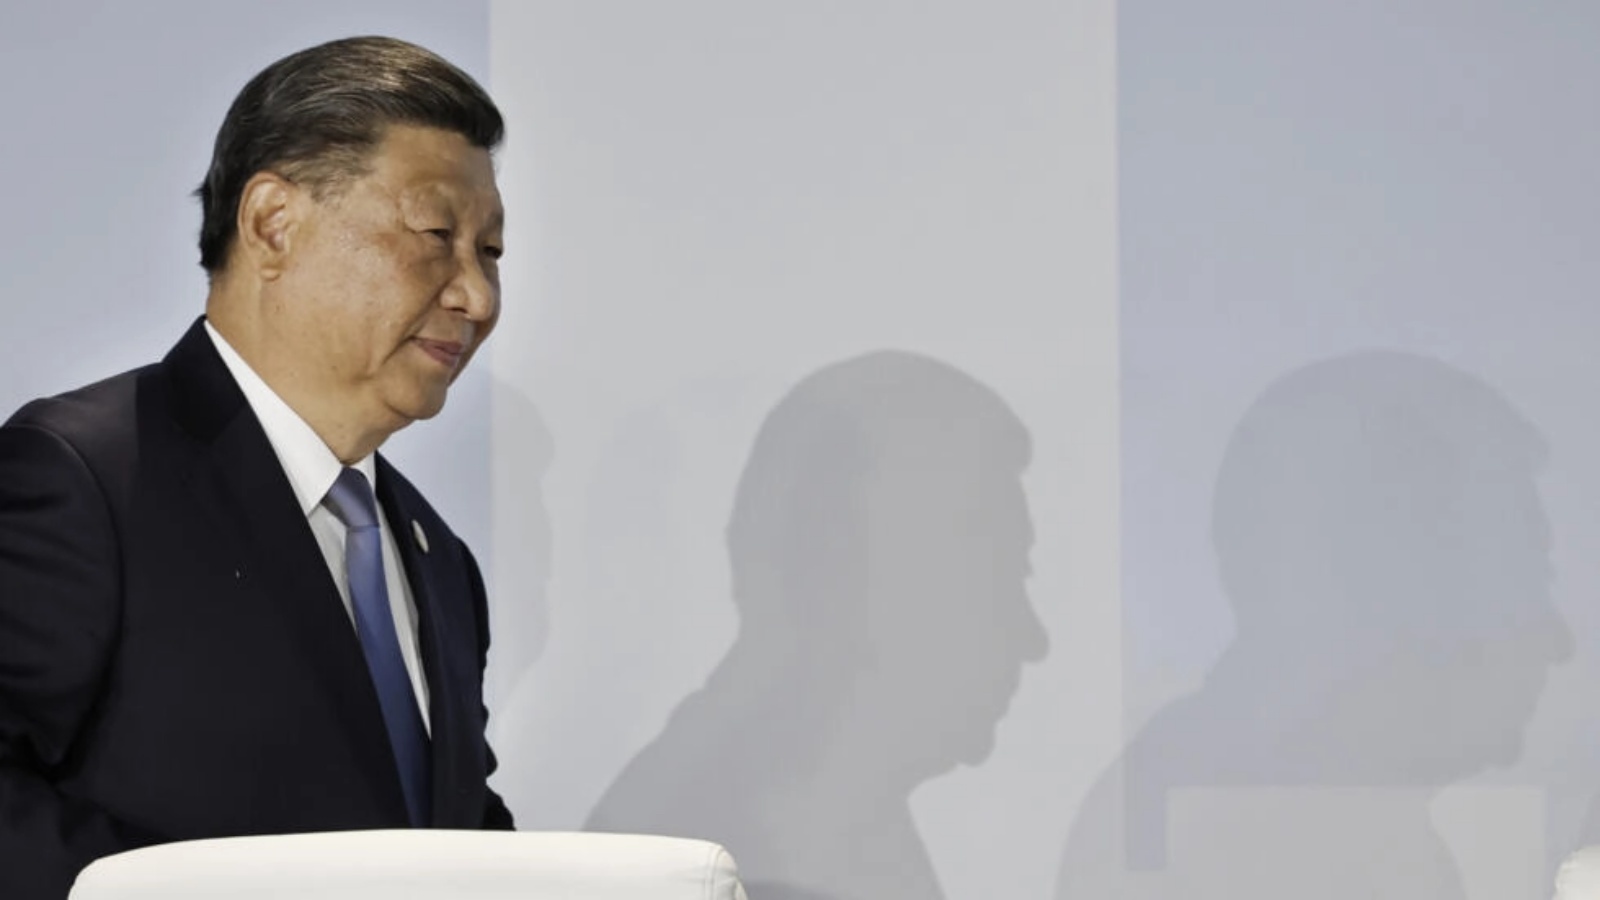 الرئيس الصيني شي جينبينغ خلال قمة مجموعة بريكس 2023 في جوهانسبرغ في جنوب إفريقيا في 24 أغسطس 2023